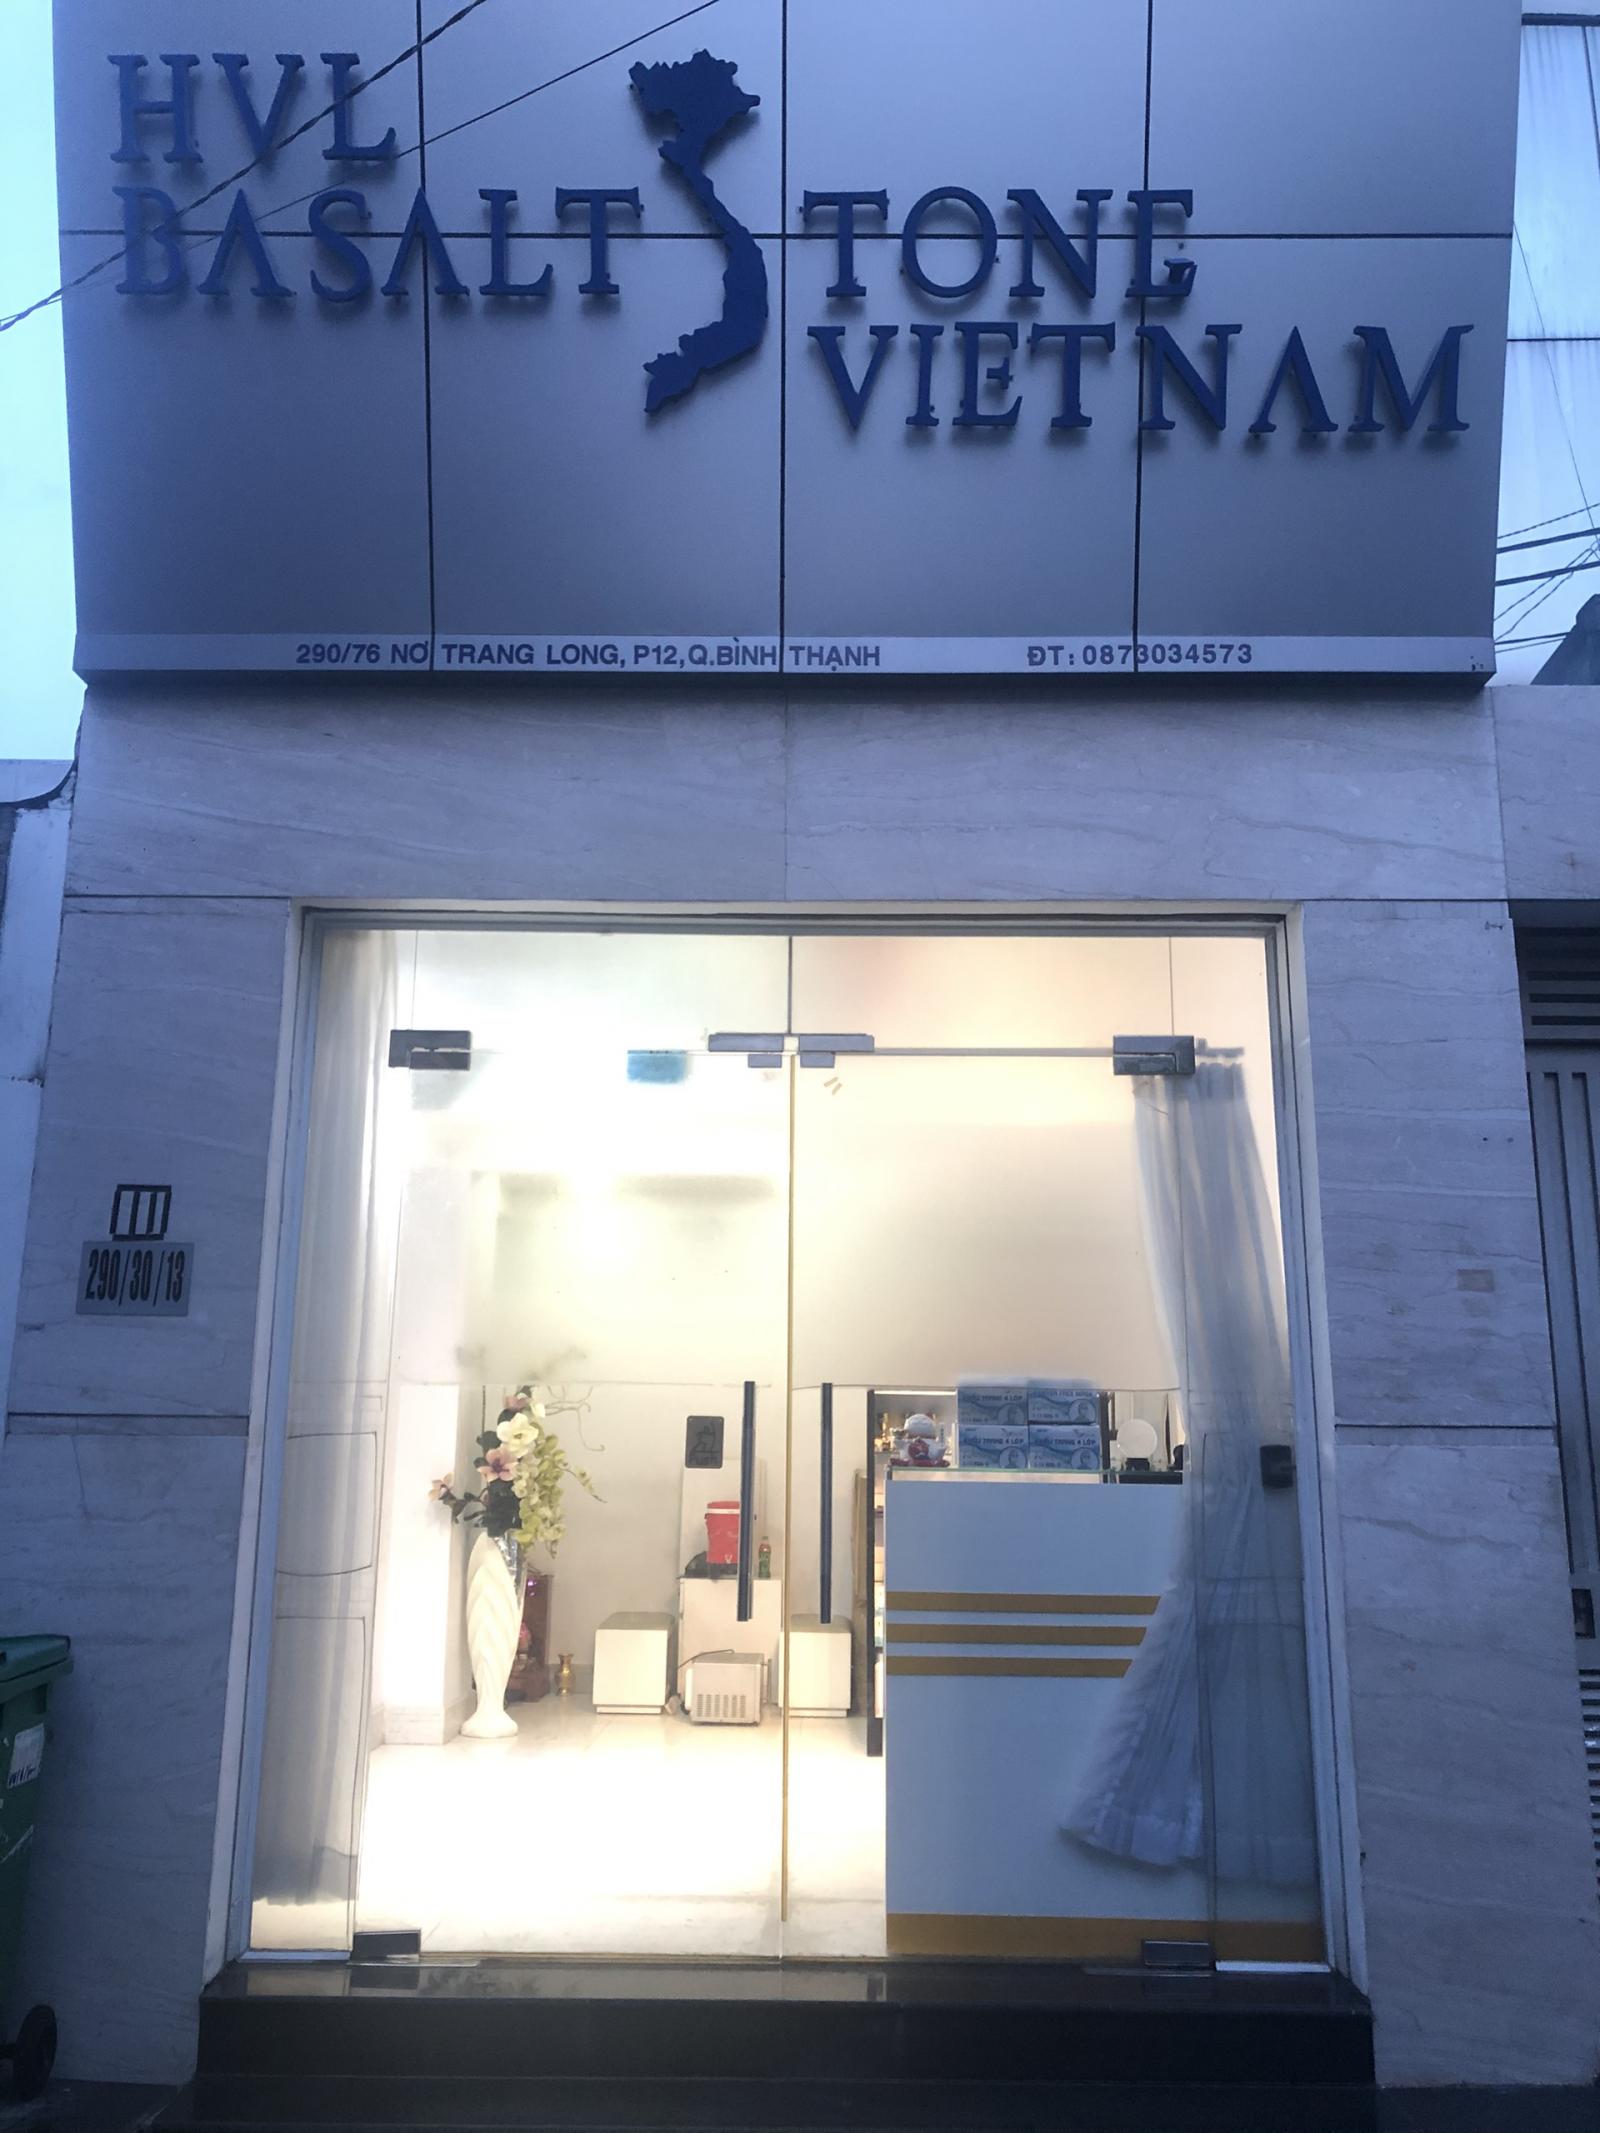 Cho thuê mặt bằng kinh doanh, có chỗ ở lại, hẻm xe tải đường Nơ Trang Long - Bình Thạnh